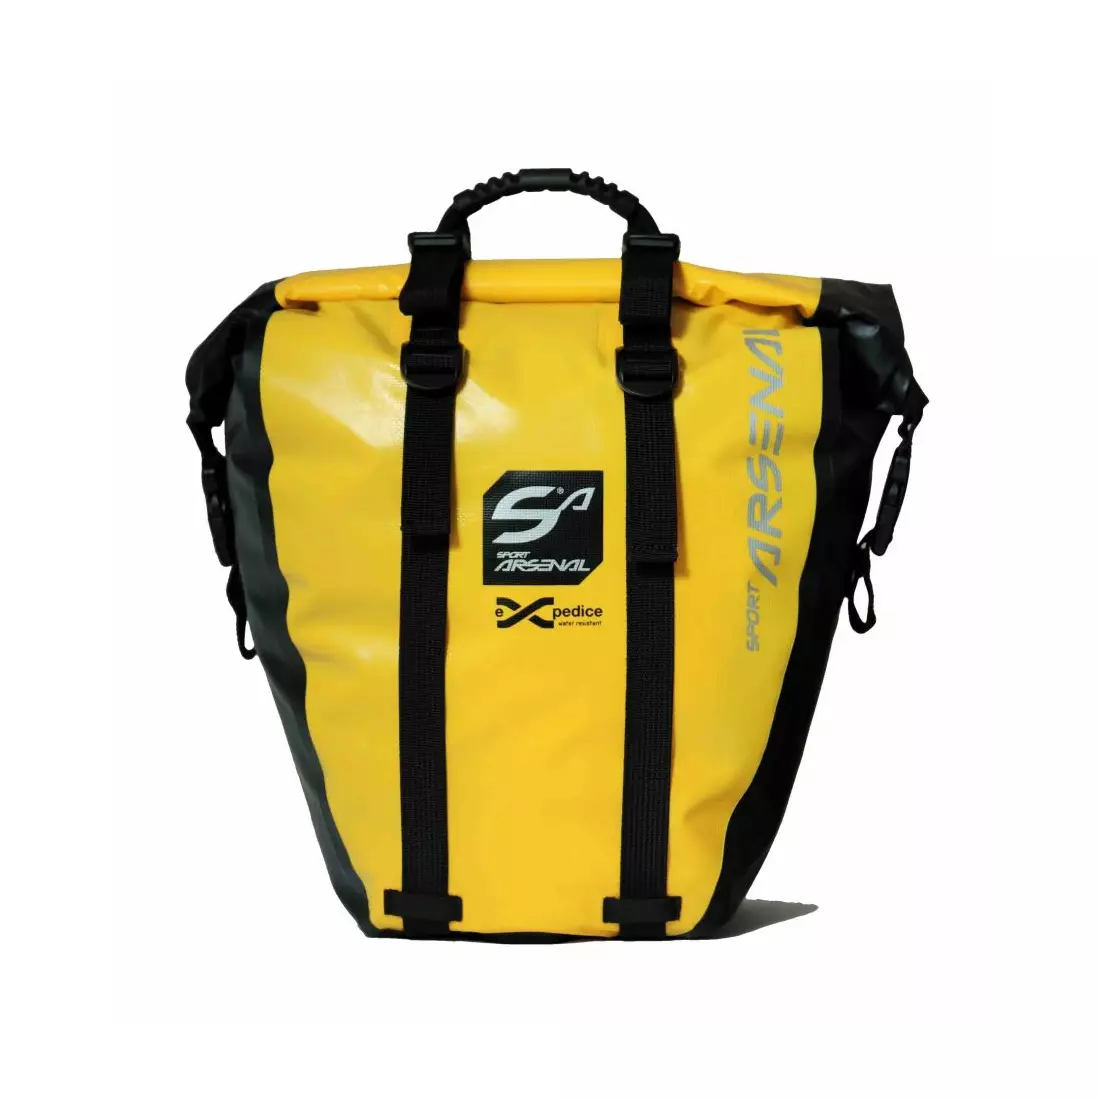 SPORT ARSENAL 312 Gepäcktasche, großes Fassungsvermögen, 1 Stück, gelb